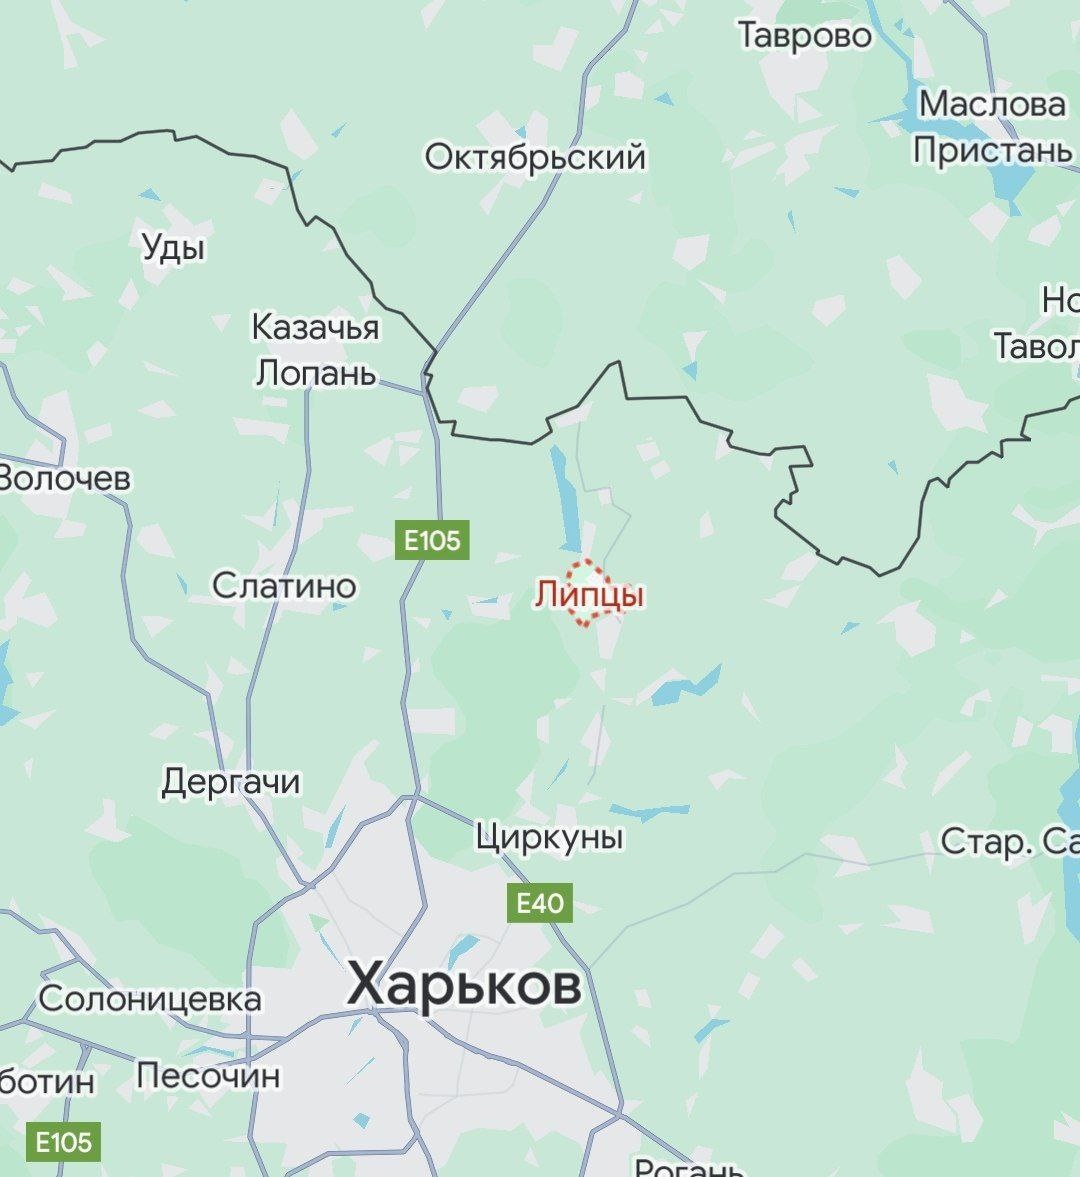 ⚡️Wojska rosyjskie zajęły miejscowość Lipcy, która znajduje się niecałe 15 km od samego Charkowa MON Federacji Rosyjskiej potwierdziło wyzwolenie kolejnych 5 miejscowości w obwodzie Charkowskim